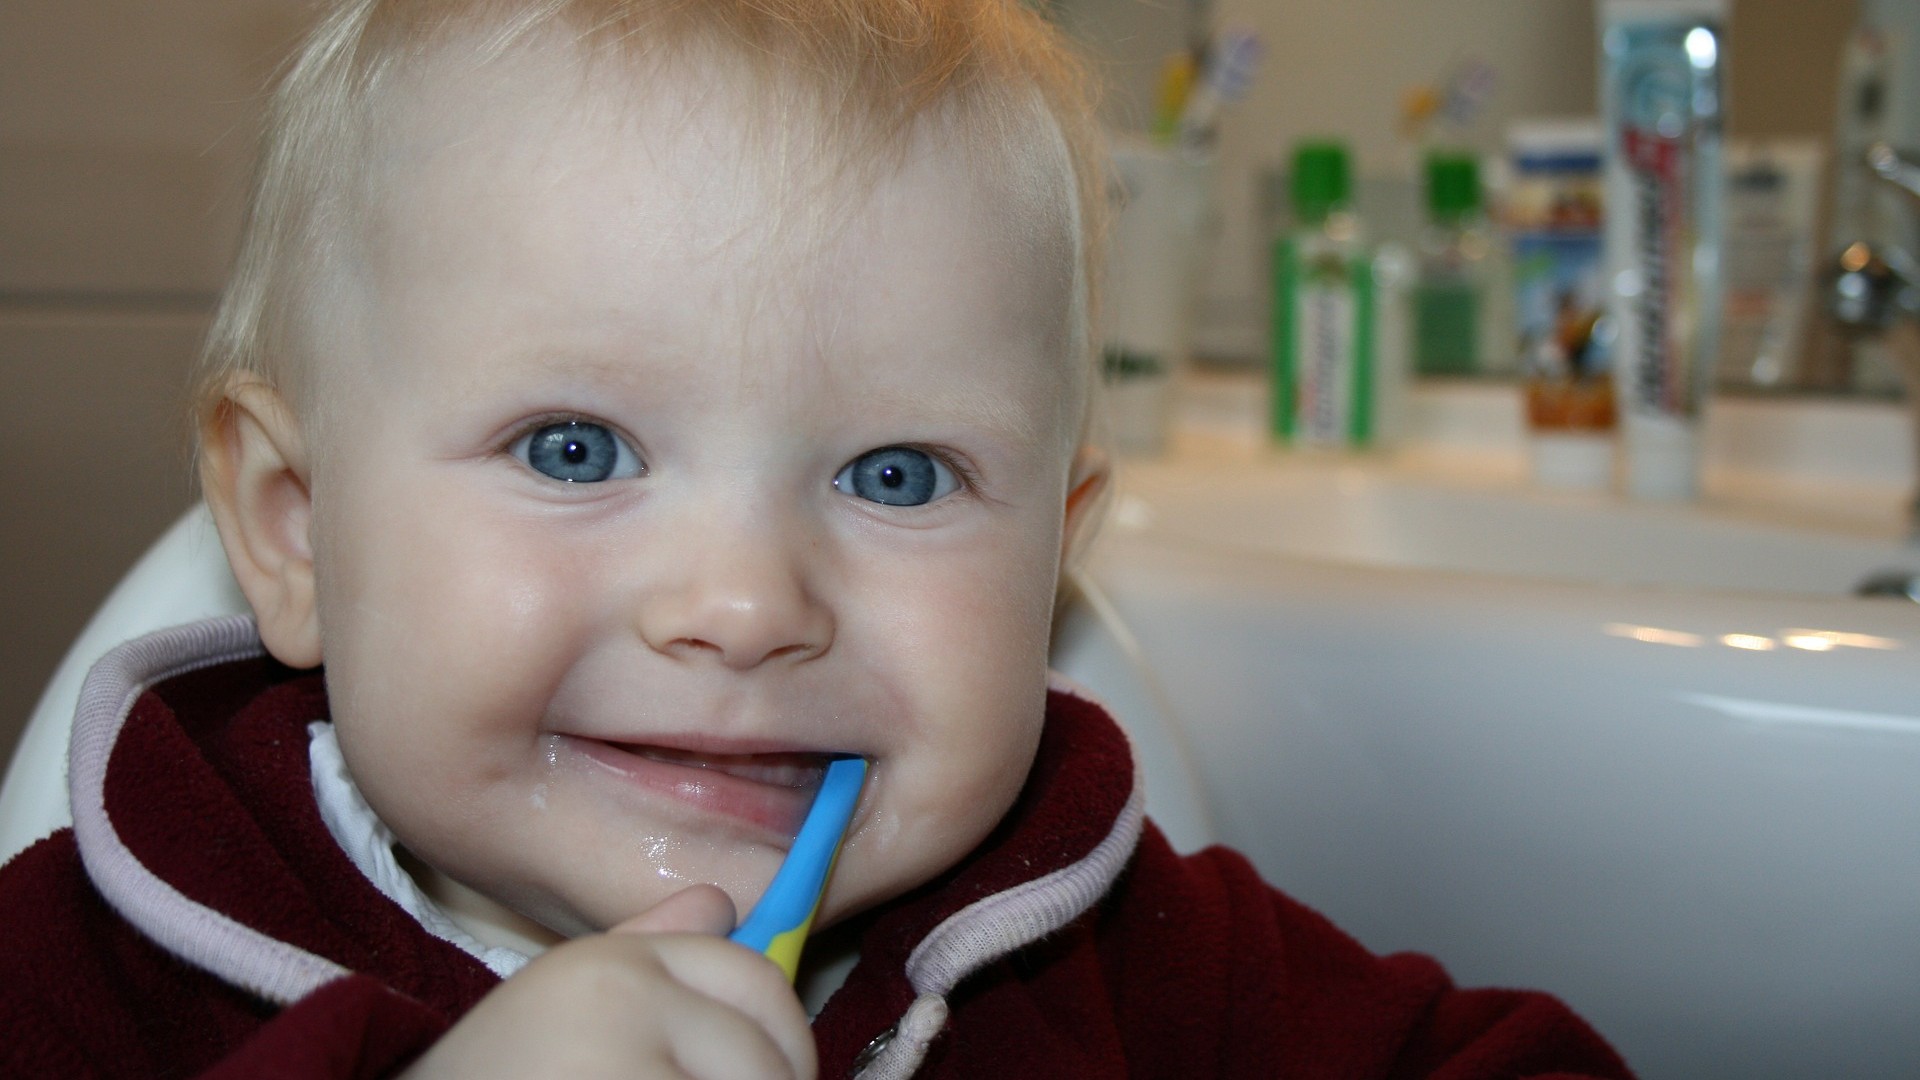 Foto de capa do artigo "Quando nascem os dentes no bebê? Quais são os sintomas?"